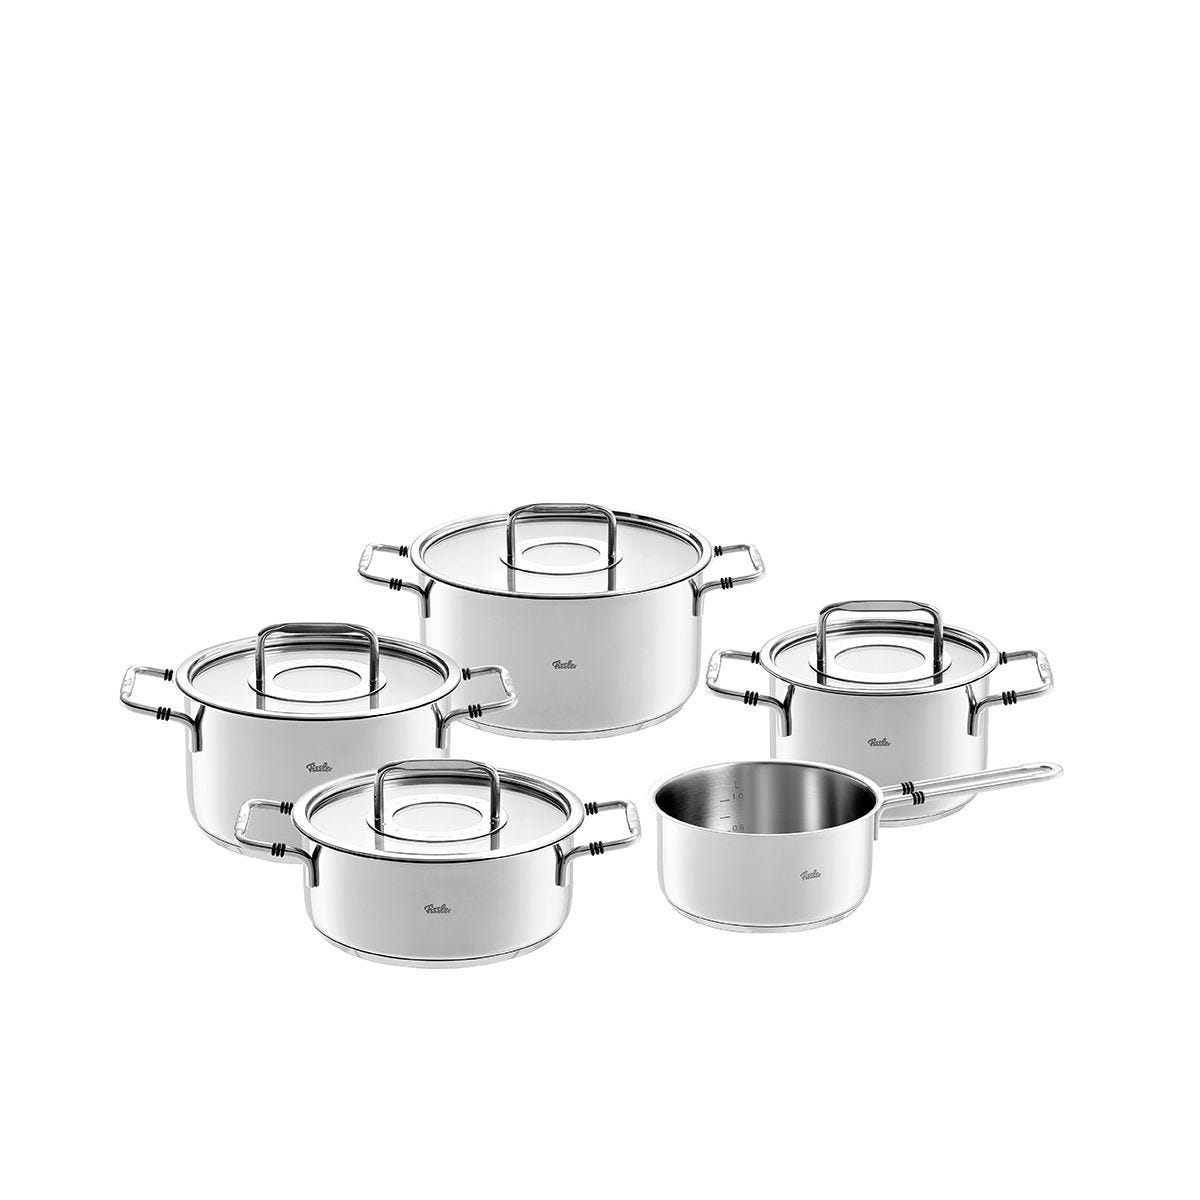 Bonn Stainless Steel Cookware Set, 9 Piece